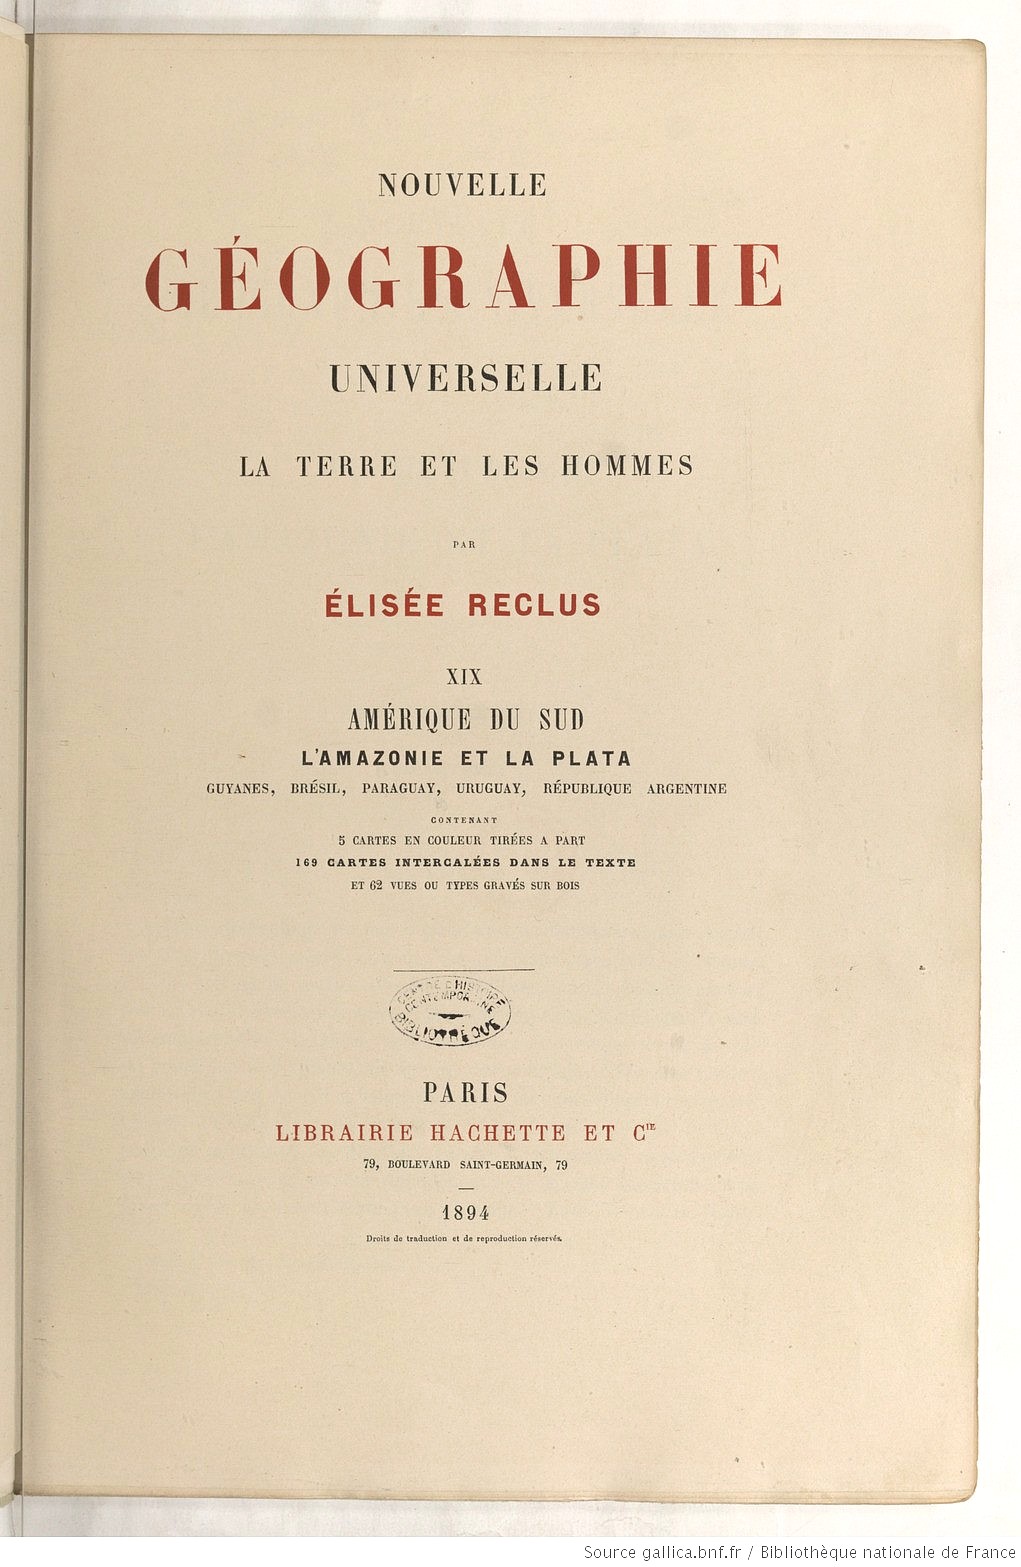 Élysée Reclus, Nouvelle Géographie Universelle (tome XIX), Paris, Édition Hachette, 1894 (source : Gallica/Bnf)